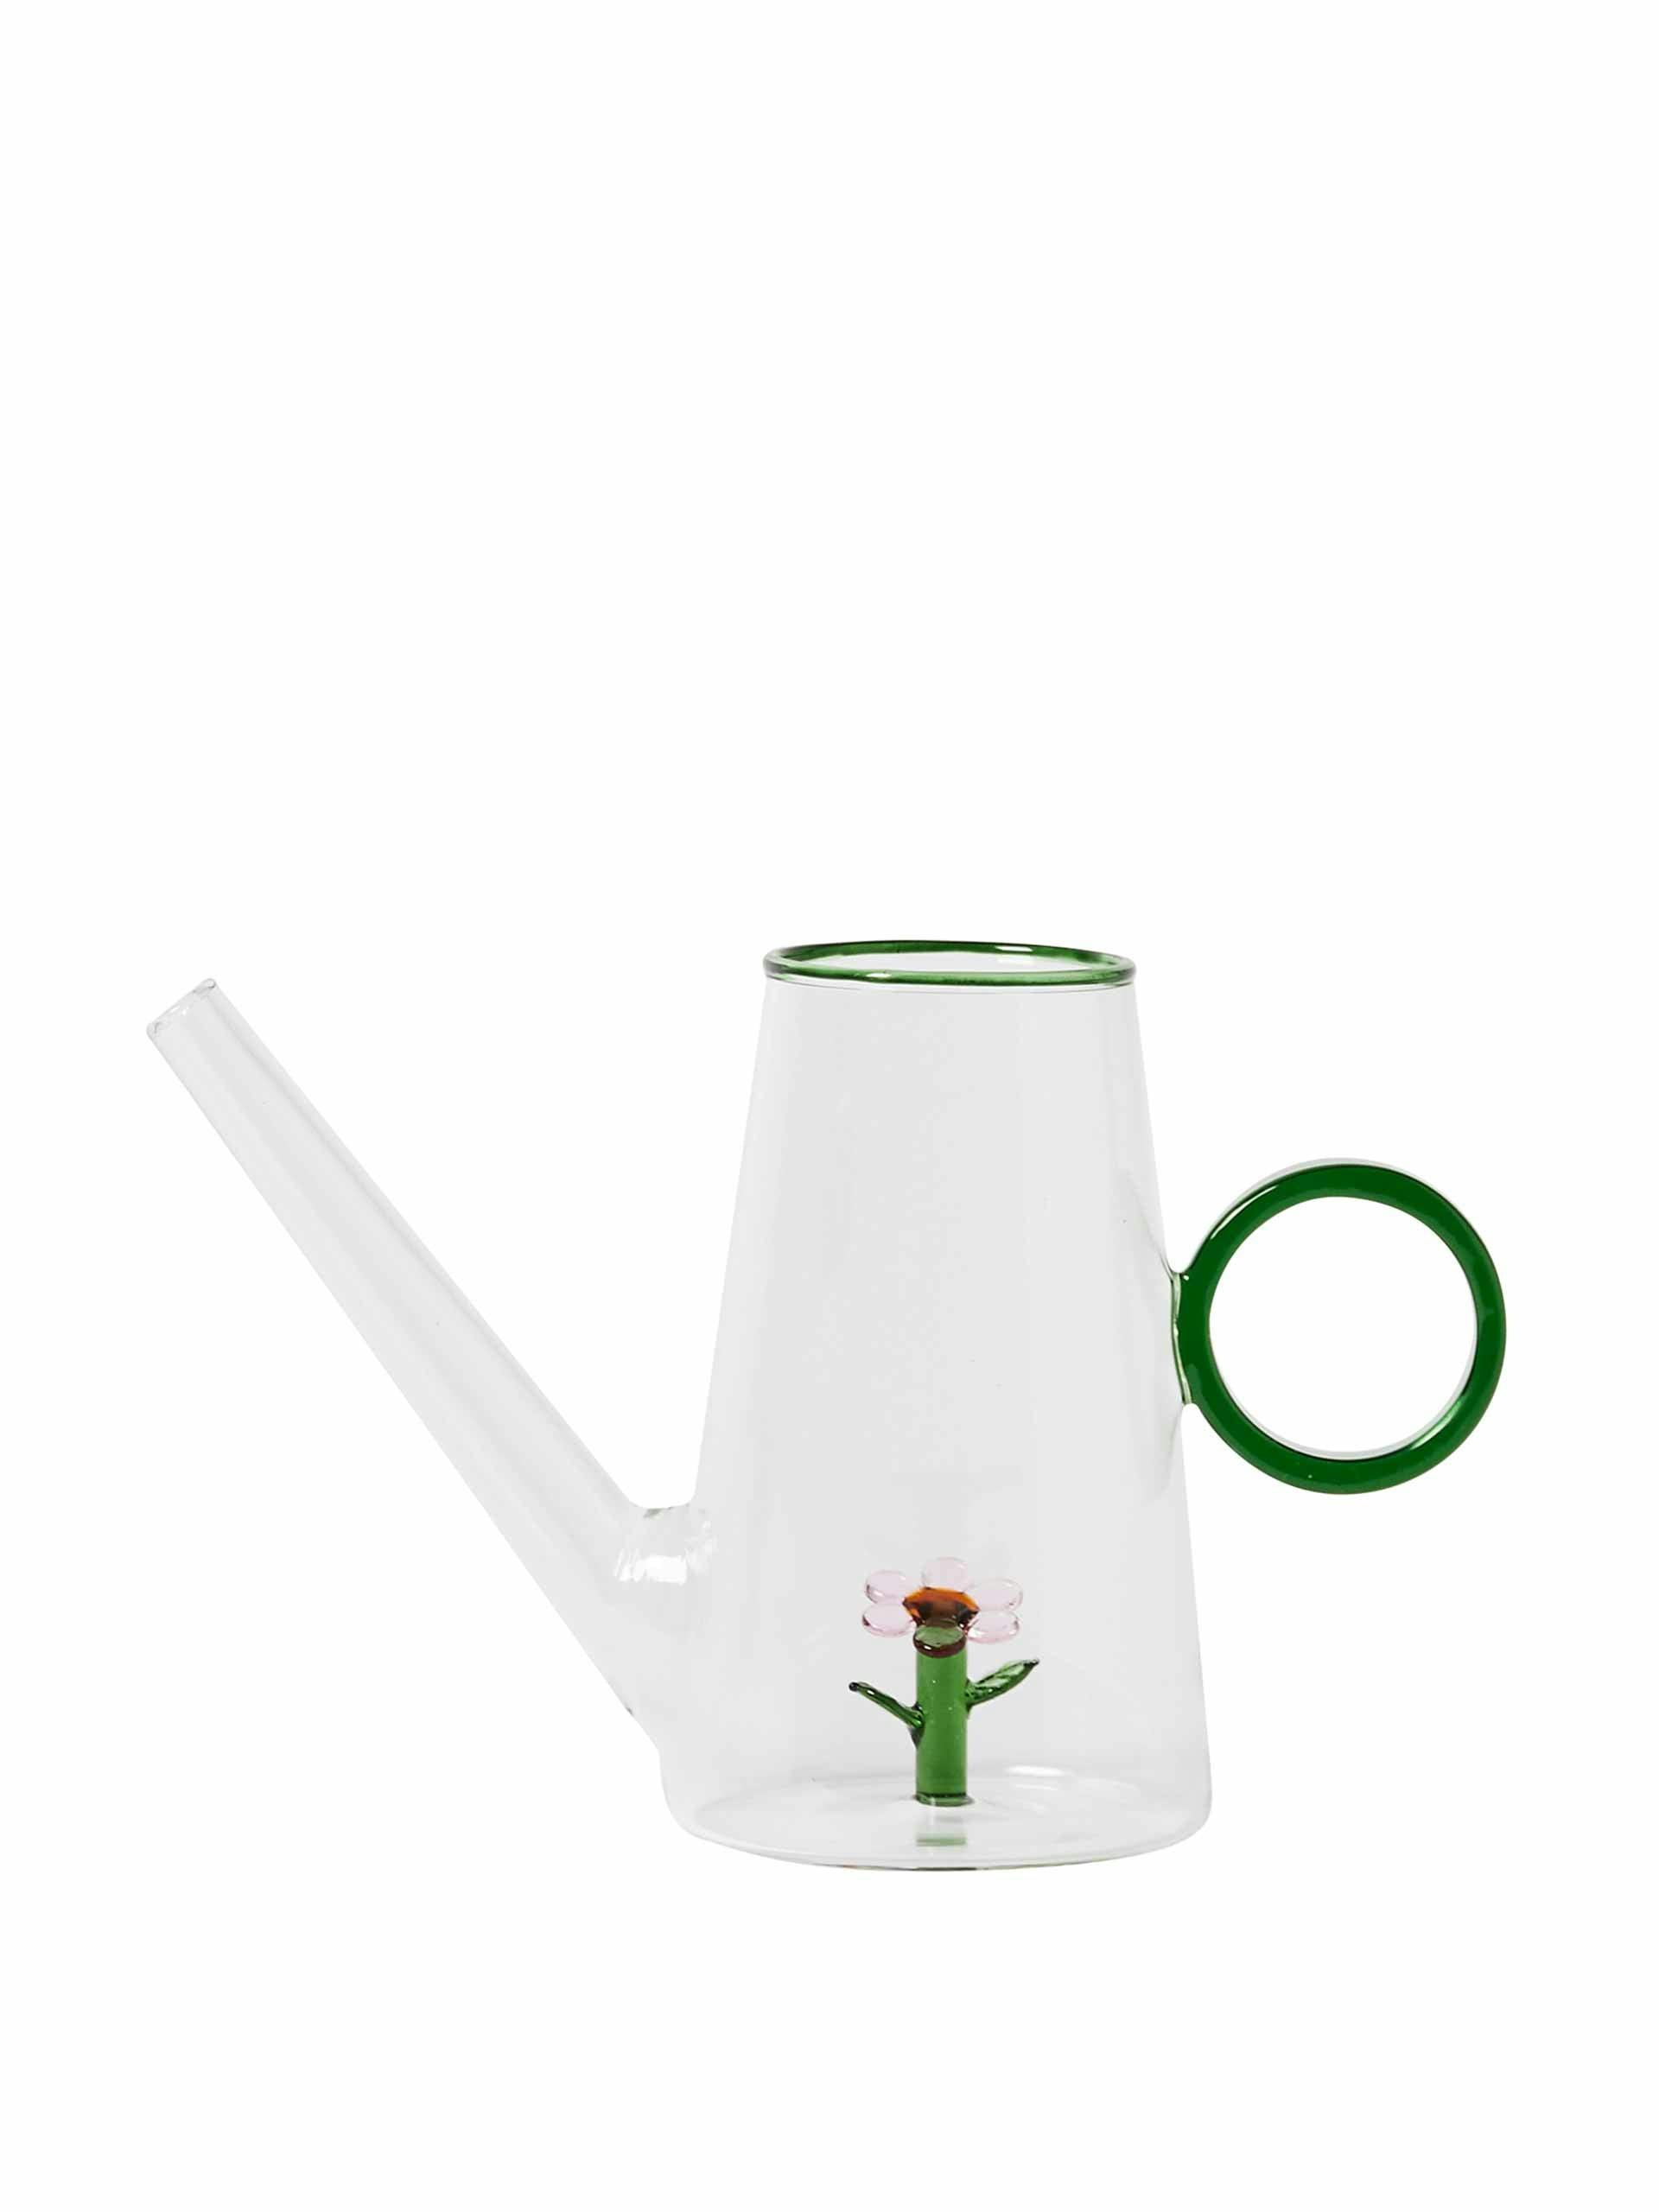 Watering jug